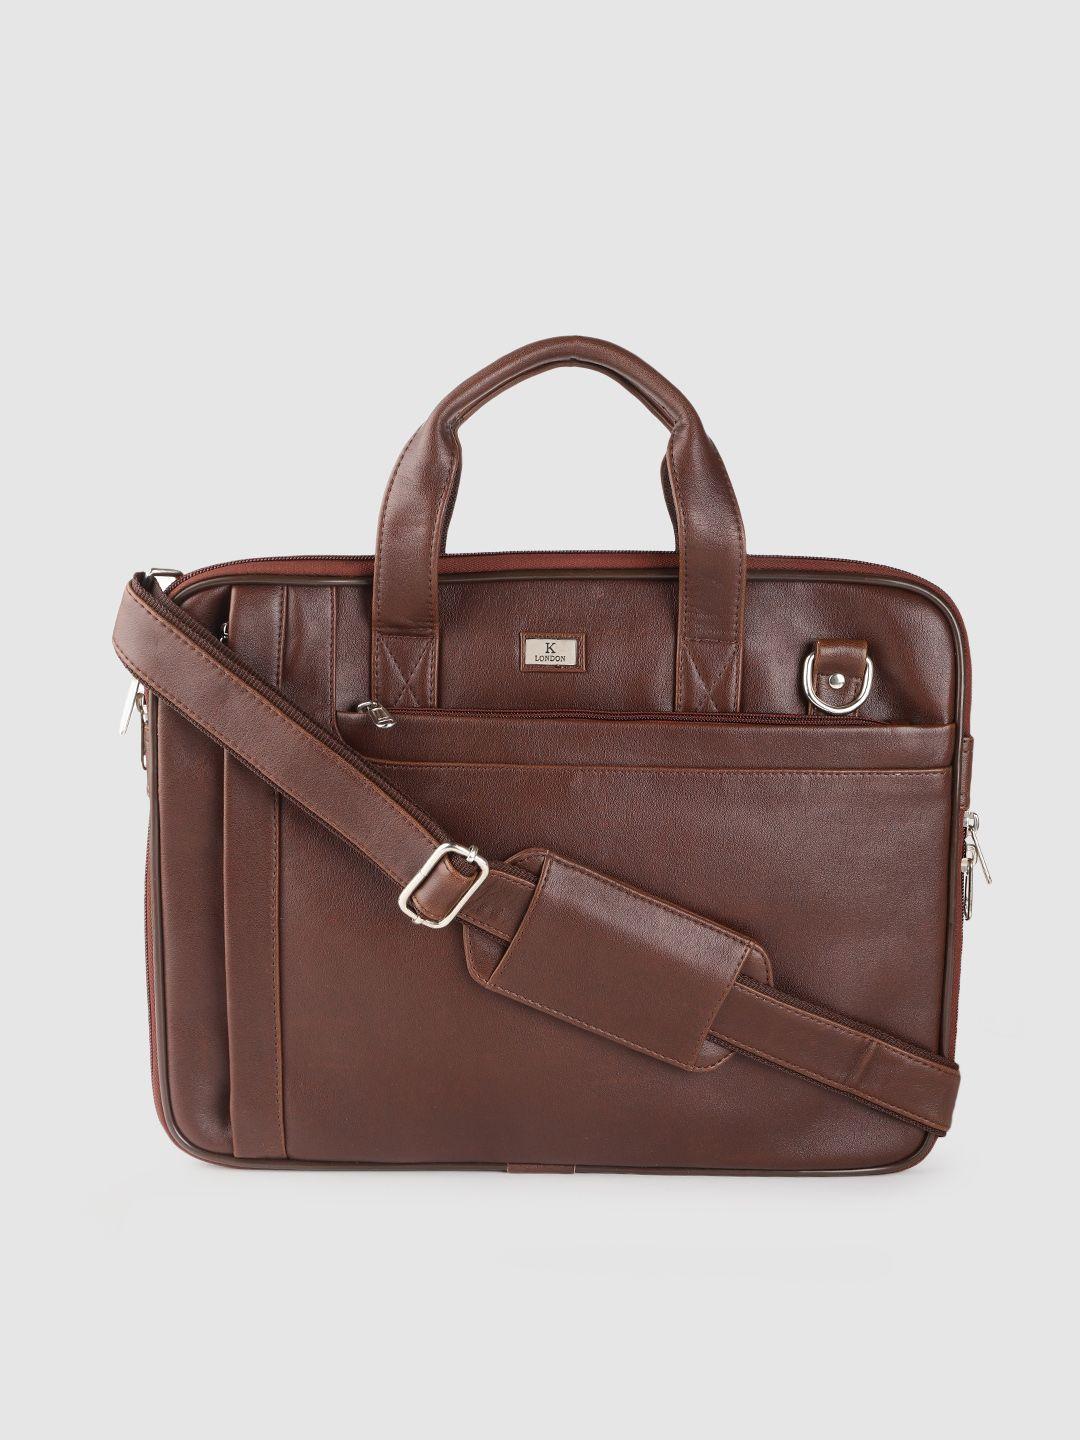 k london unisex brown laptop bag